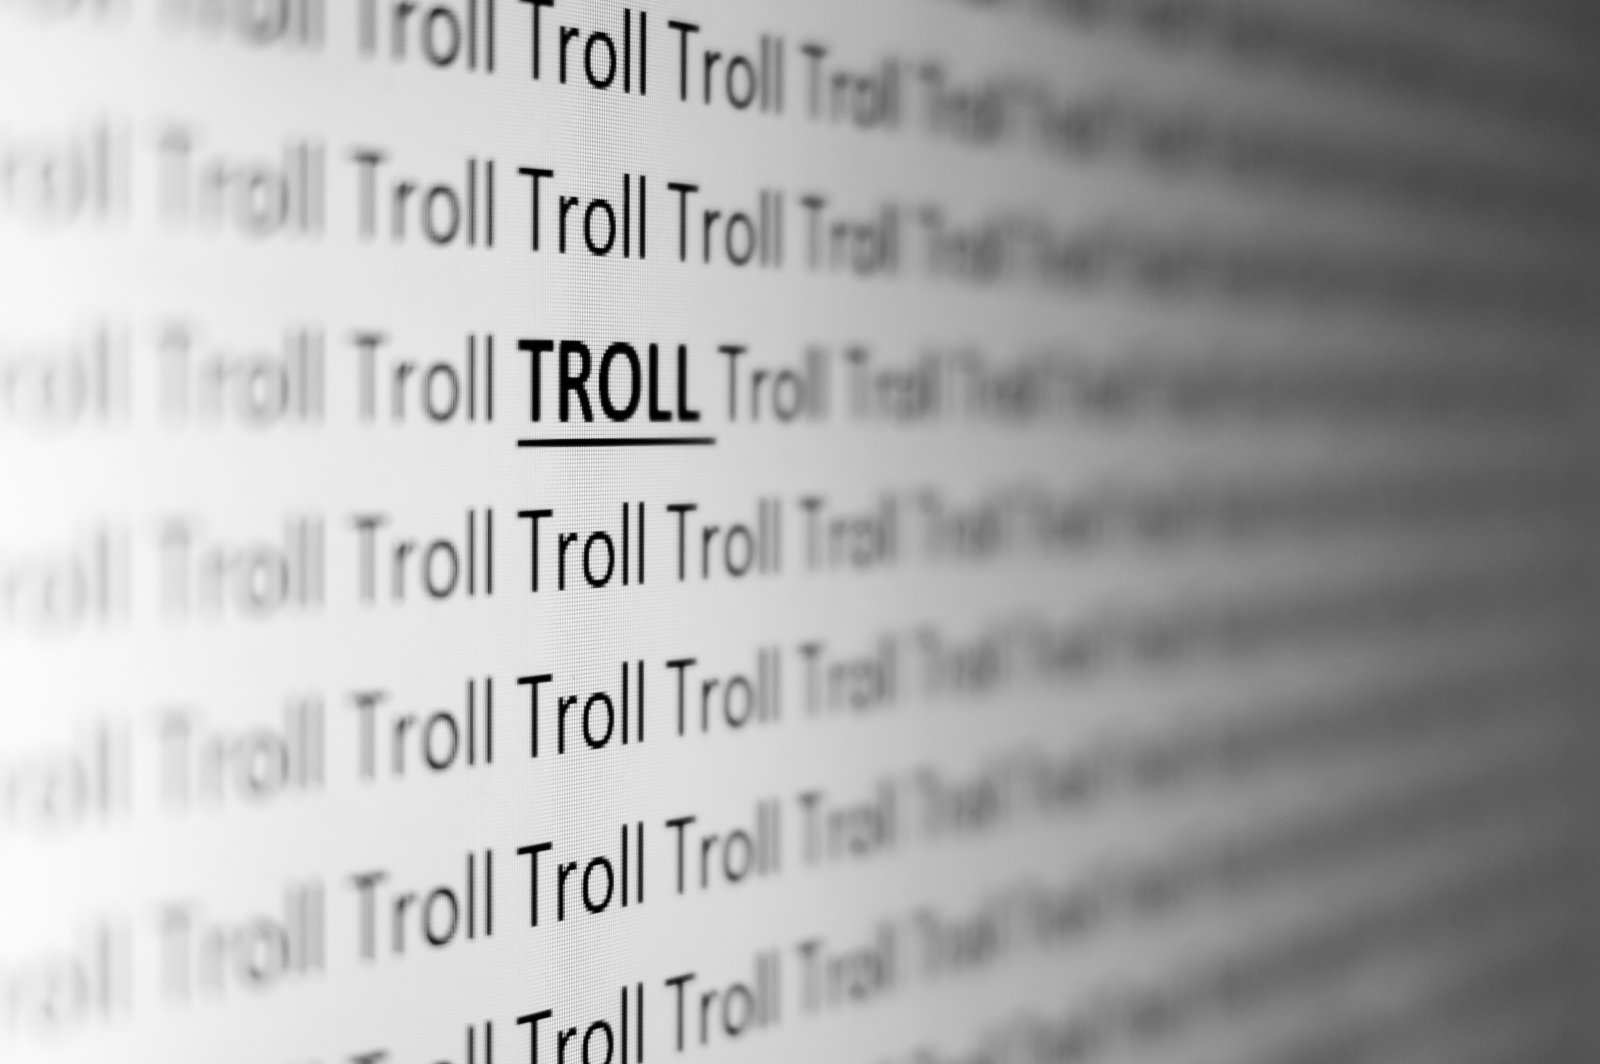 Ειδική μονάδα ετοιμάζει η αστυνομία στο Λονδίνο για να αντιμετωπίσει το trolling στα social media